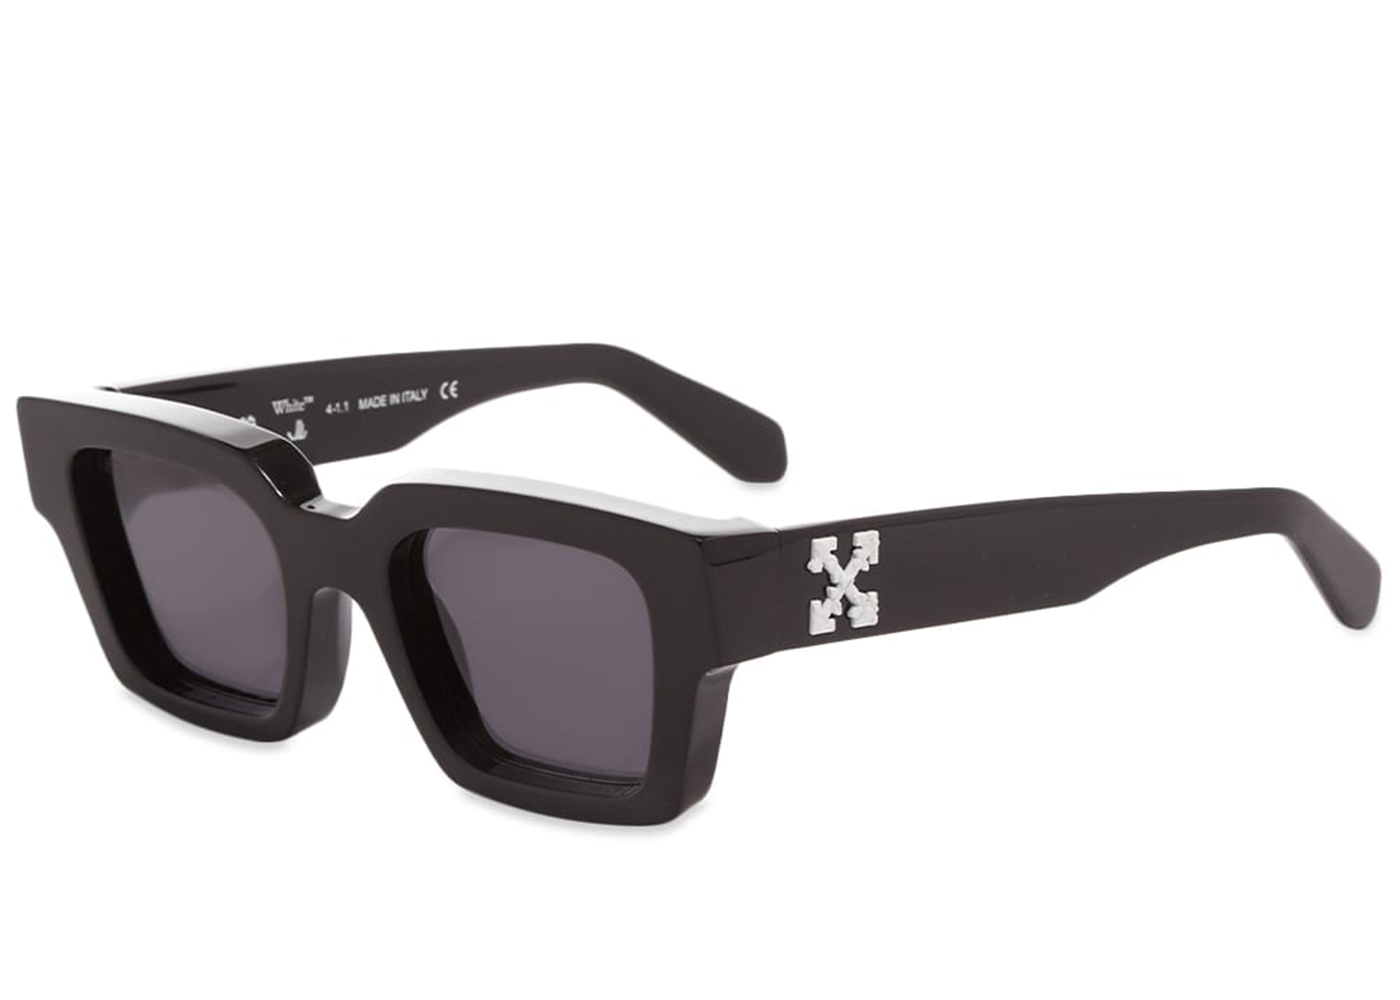 Buy Off-White Sunglasses Accessories - StockX